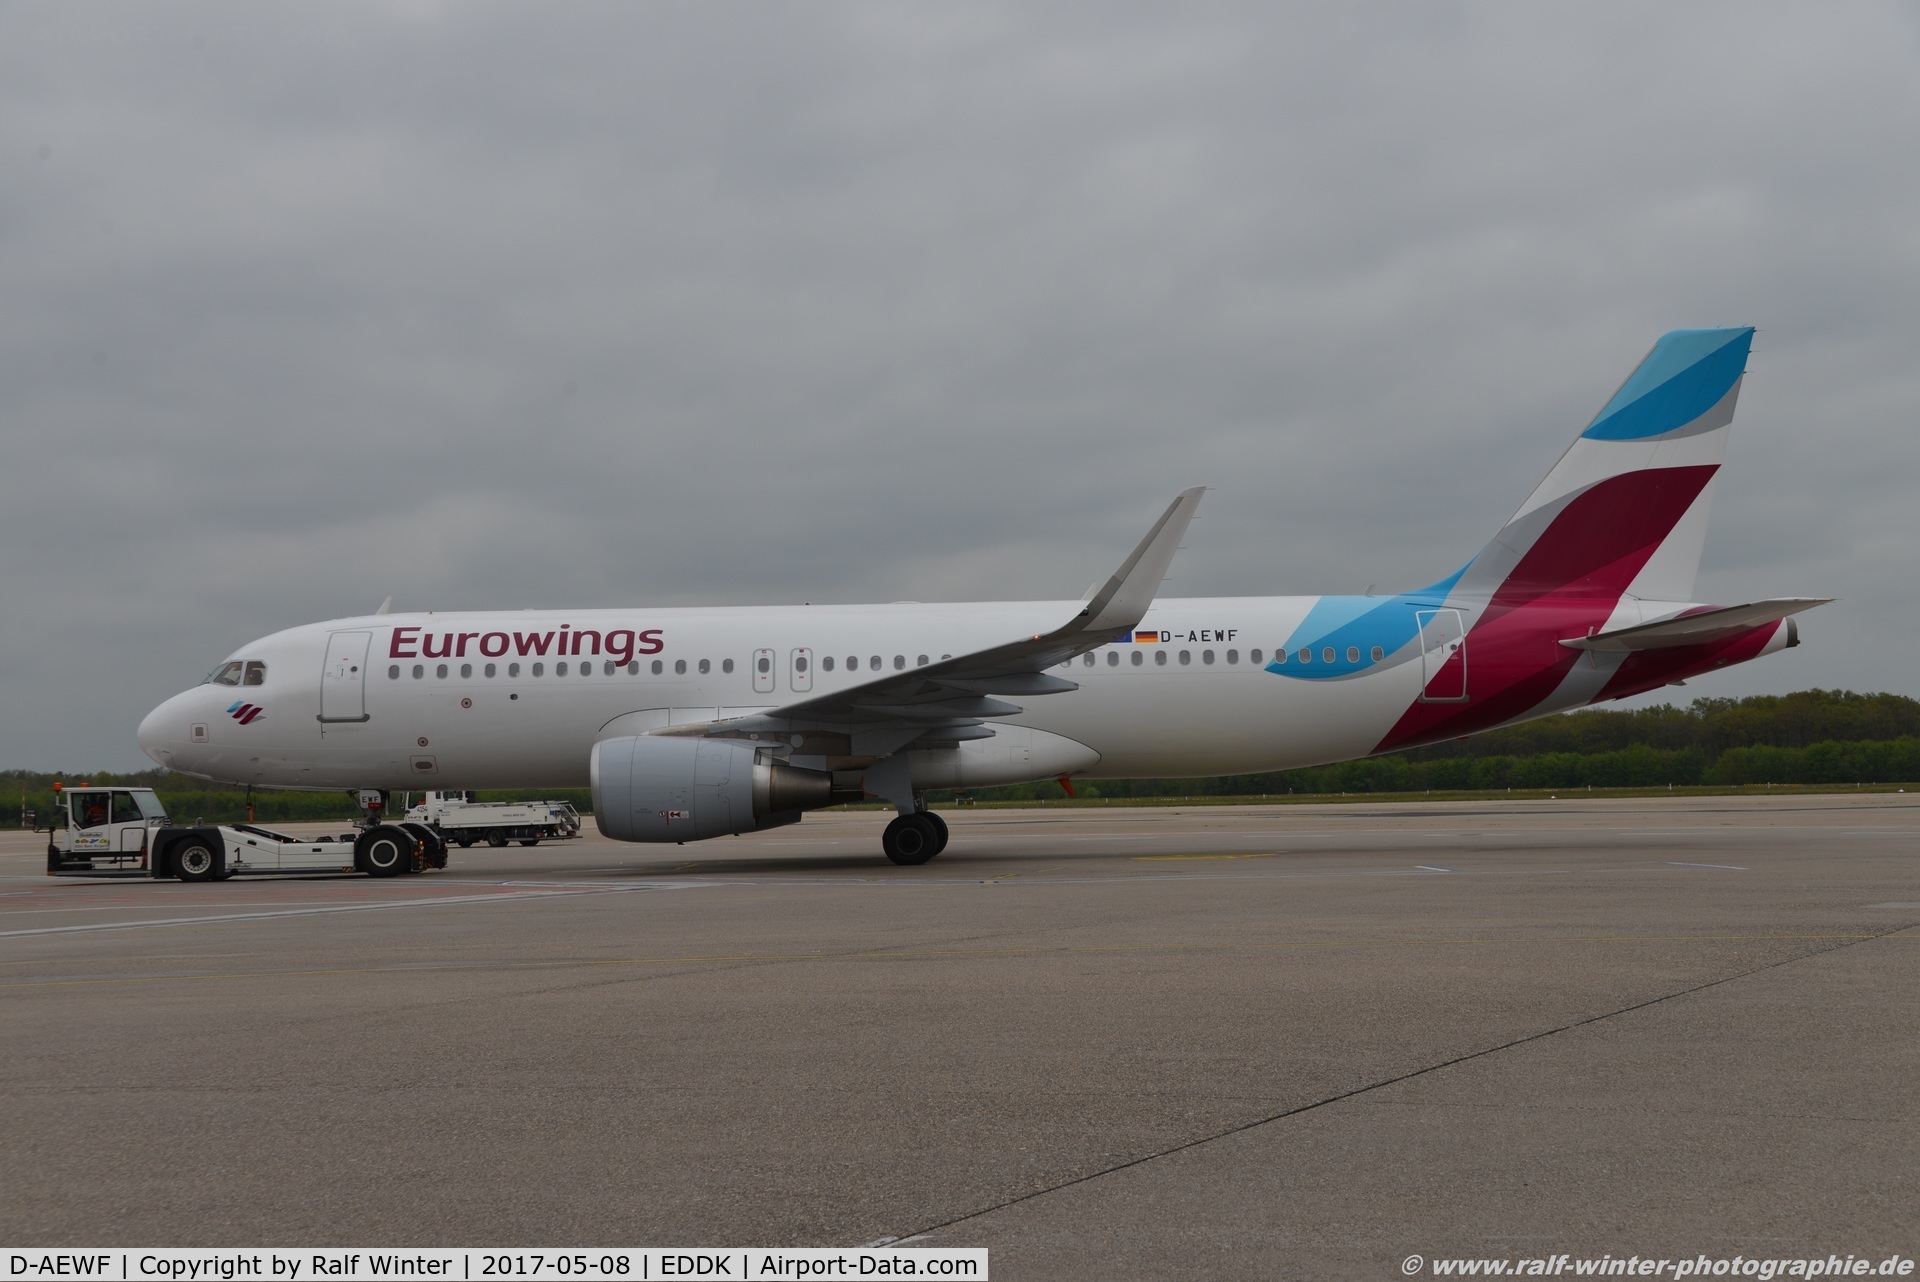 D-AEWF, 2016 Airbus A320-214 C/N 7087, Airbus A320-214(W) - EW EWG Eurowings - 7087 - D-AEWF - 08.05.2017 - CGN